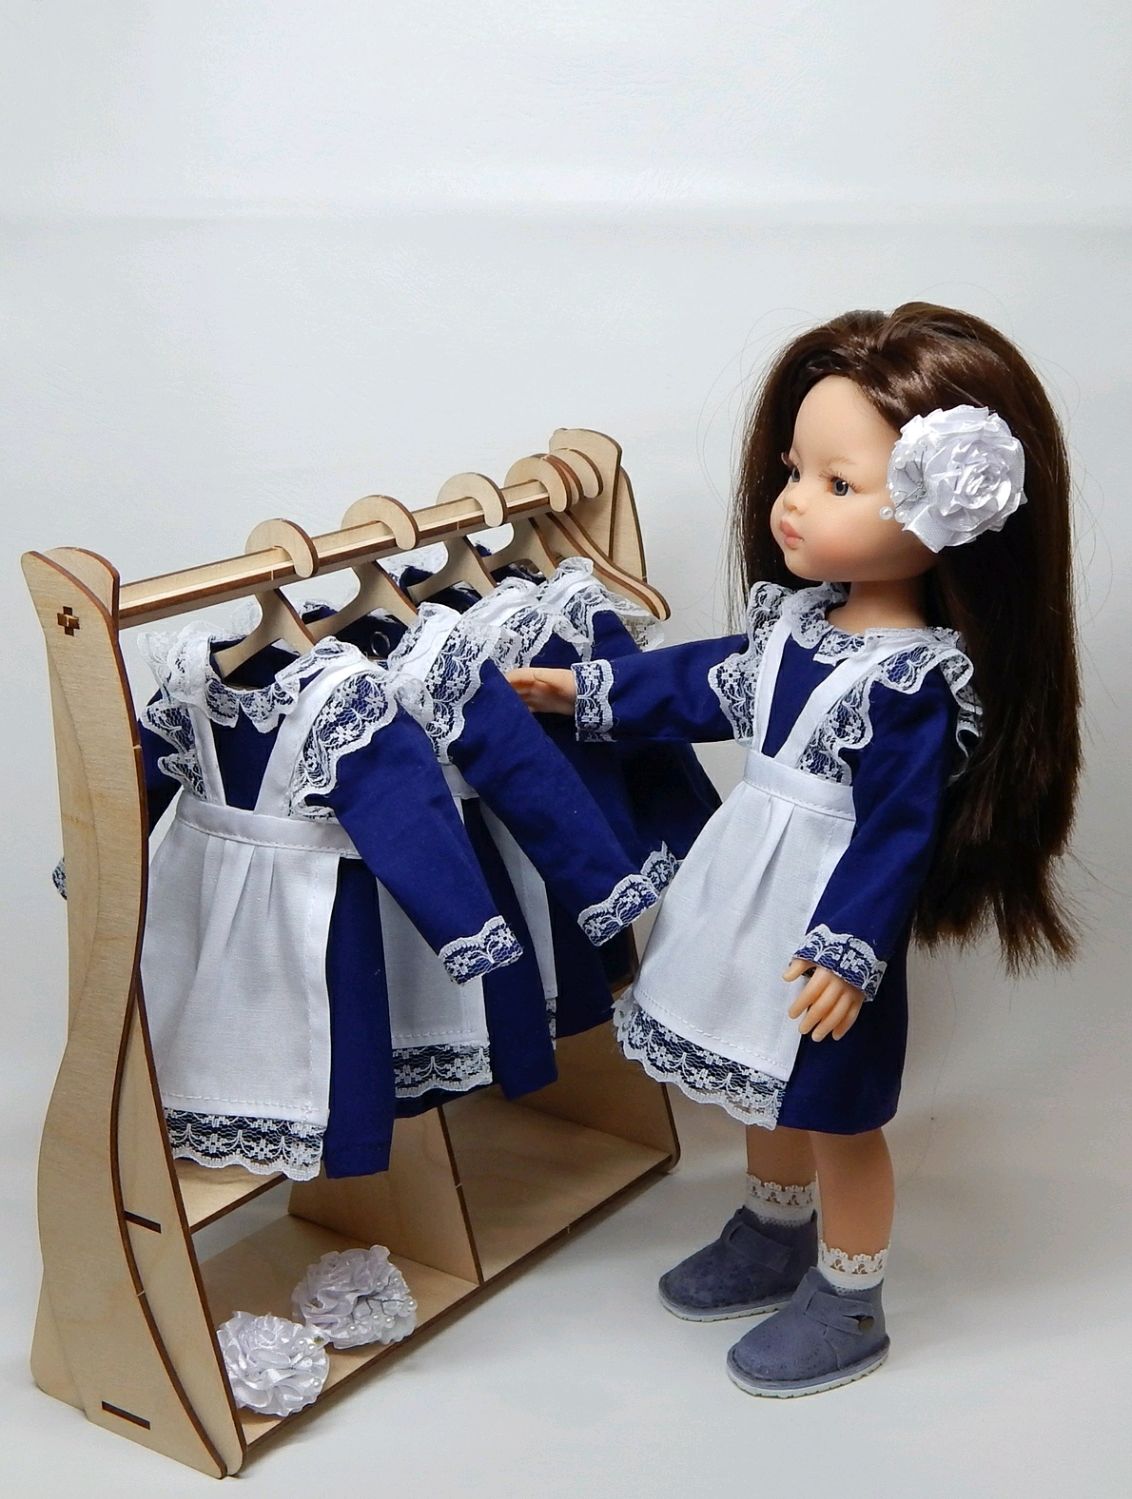 одежда для кукол и мебель для кукол